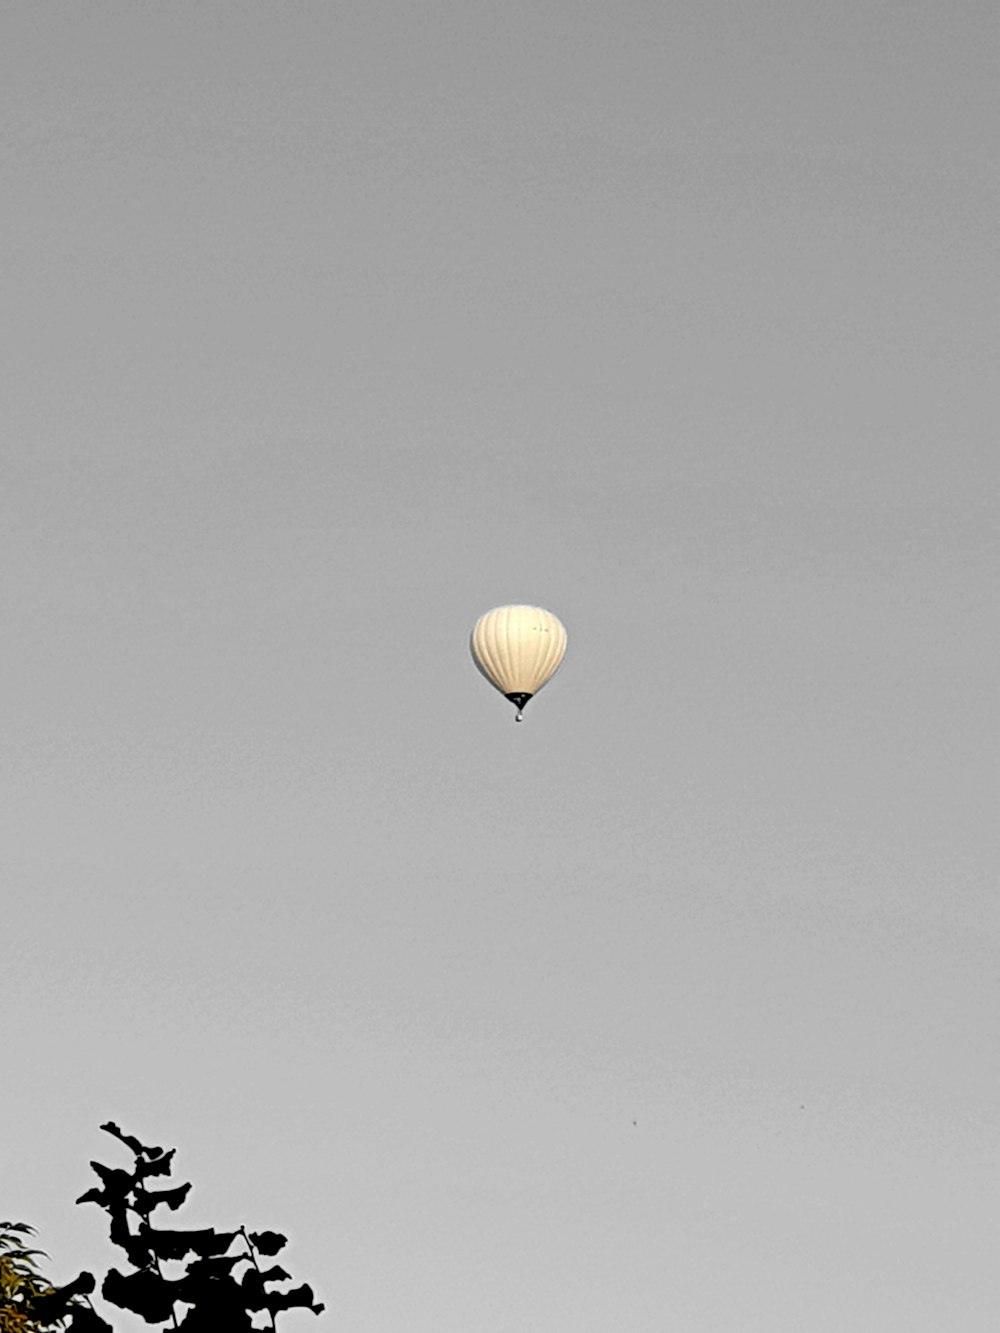 globo aerostático amarillo flotando en el cielo